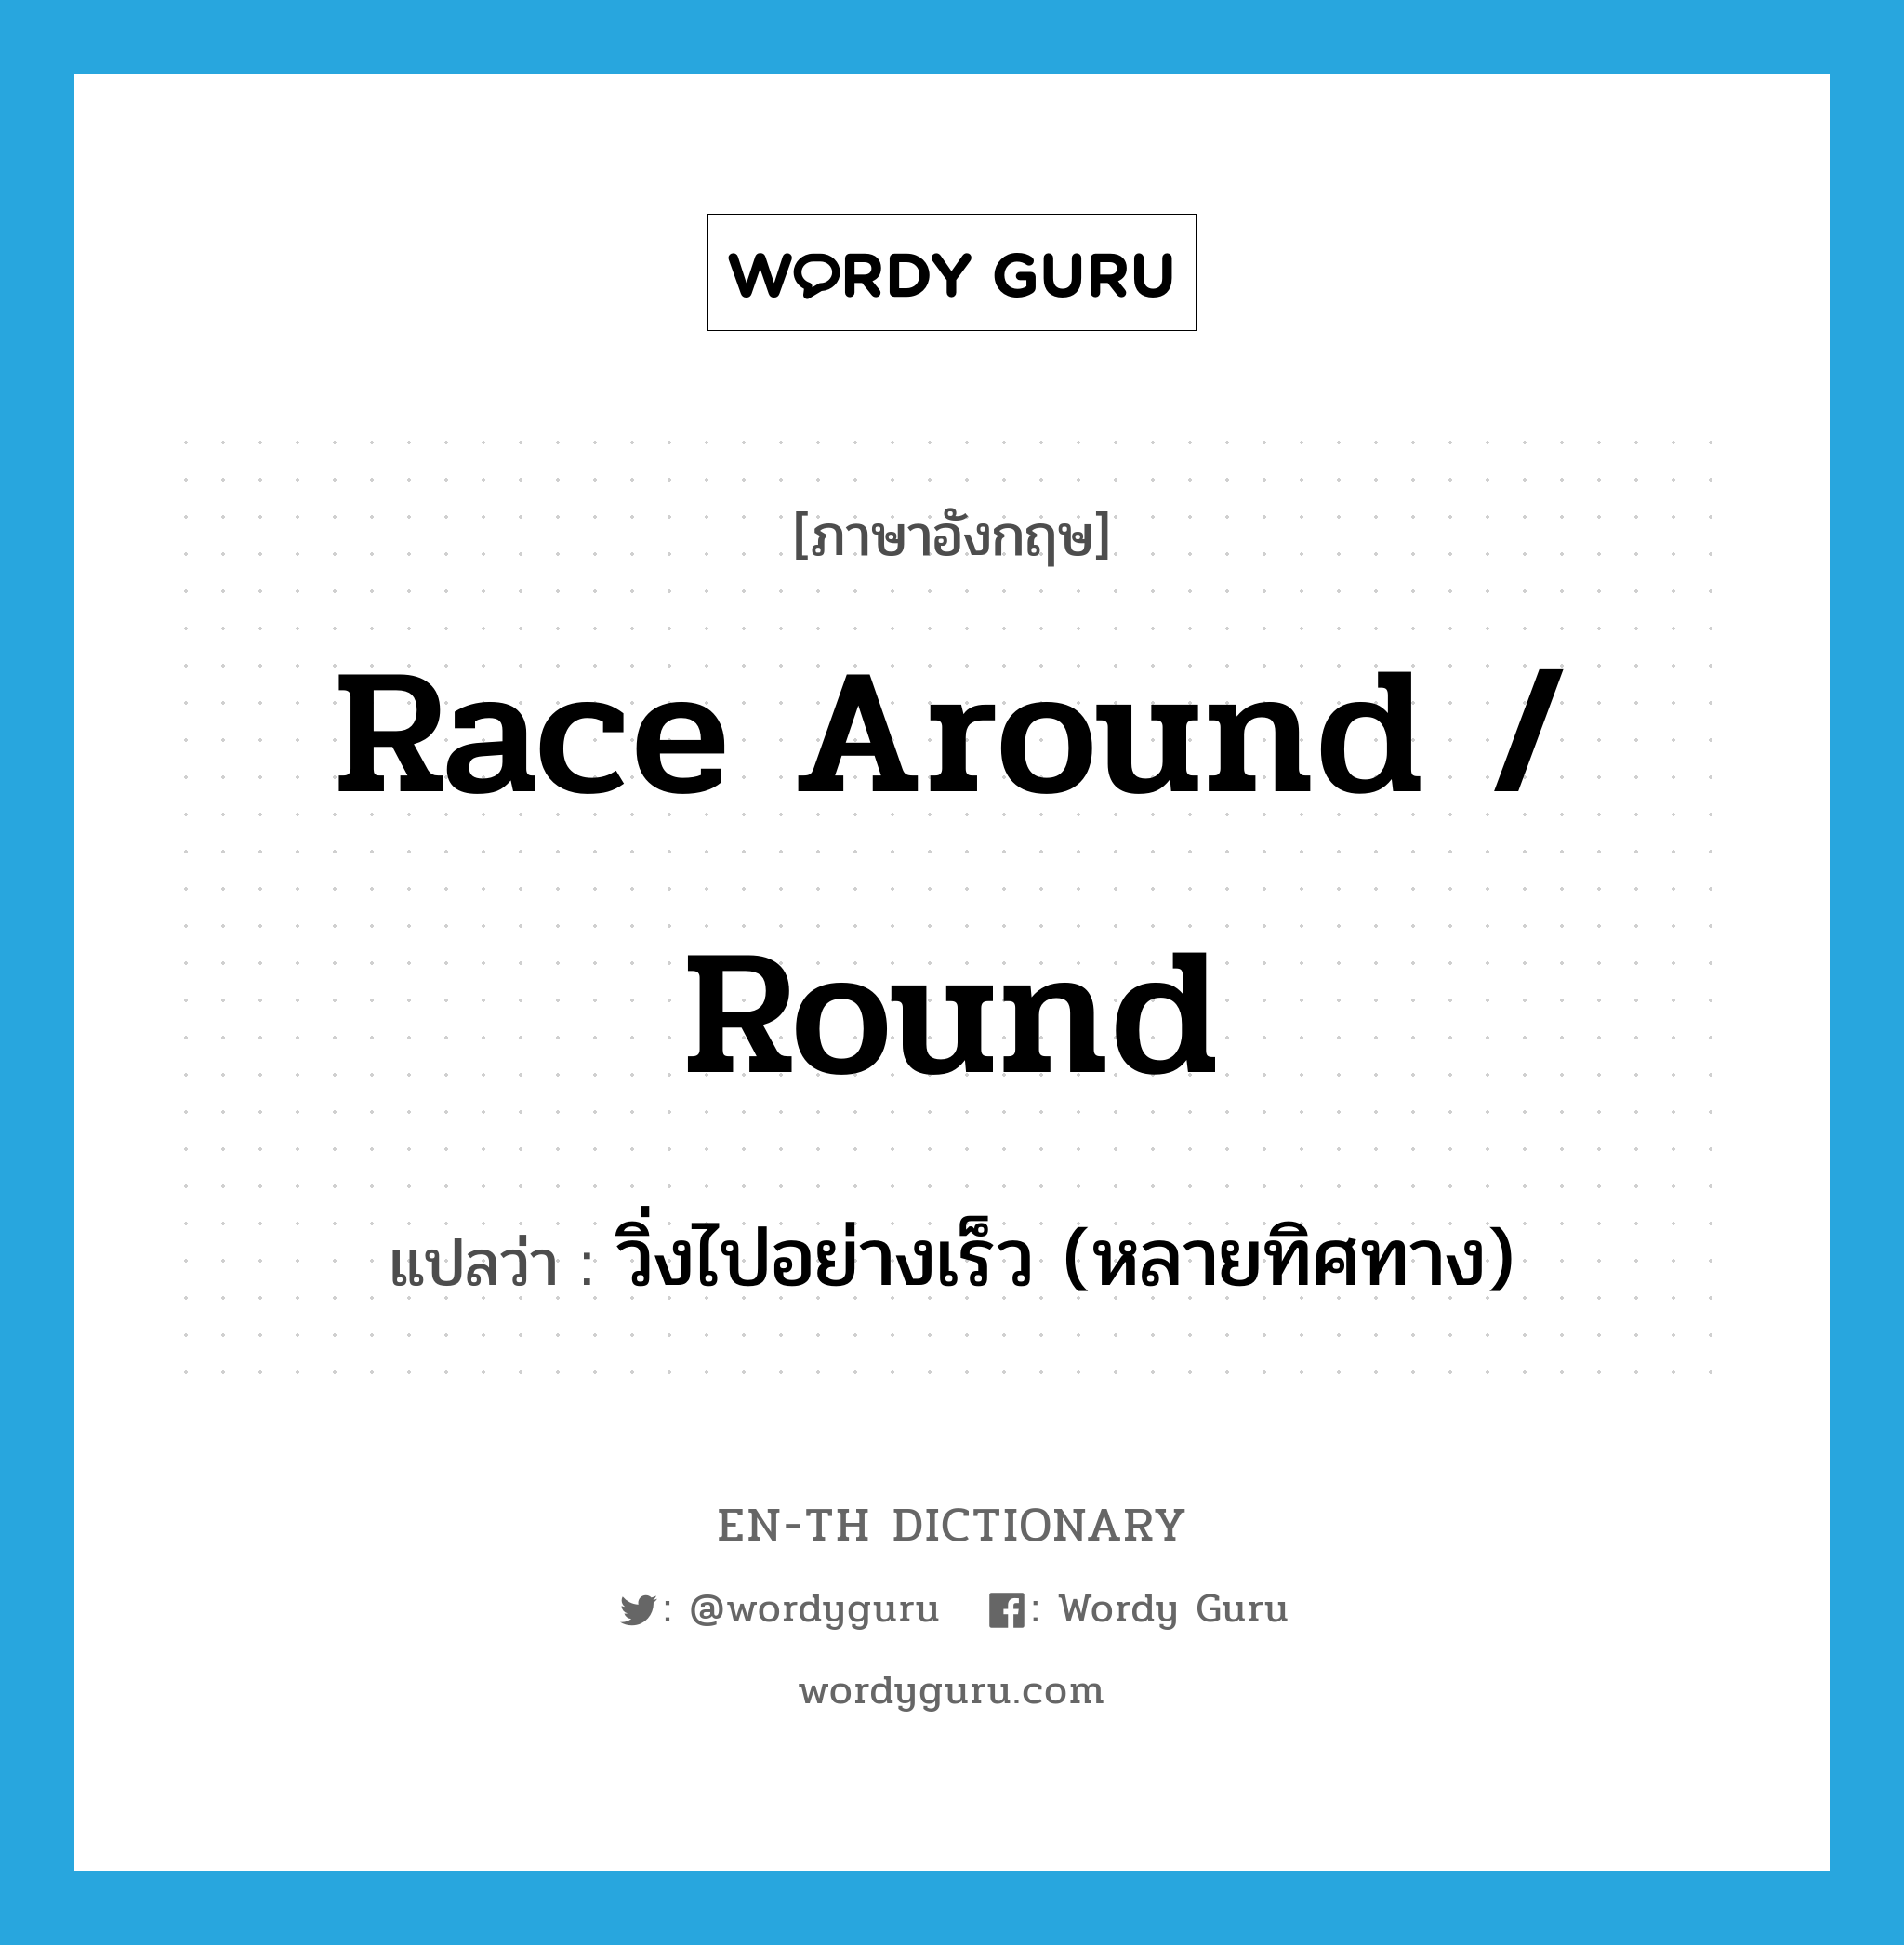 วิ่งไปอย่างเร็ว (หลายทิศทาง) ภาษาอังกฤษ?, คำศัพท์ภาษาอังกฤษ วิ่งไปอย่างเร็ว (หลายทิศทาง) แปลว่า race around / round ประเภท PHRV หมวด PHRV